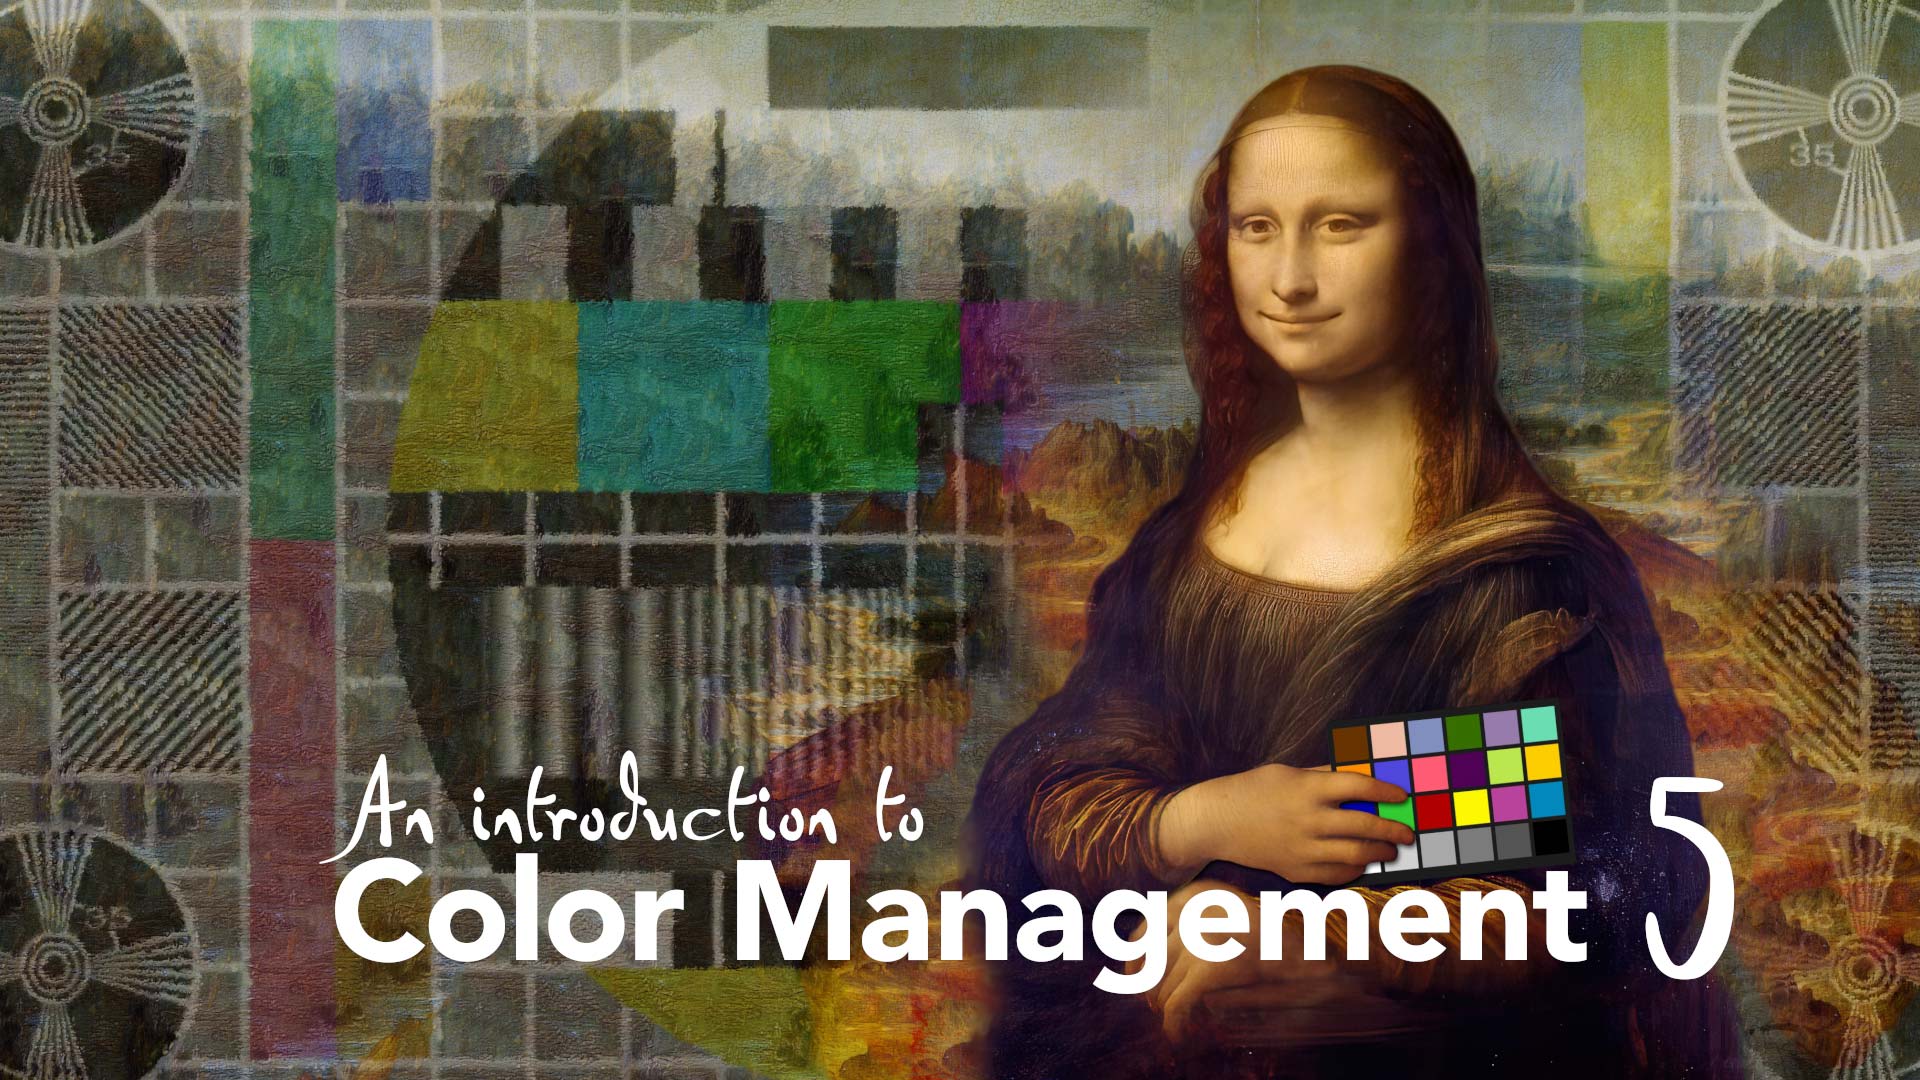 Color Management Part 5: Introducing CIE 1931 43